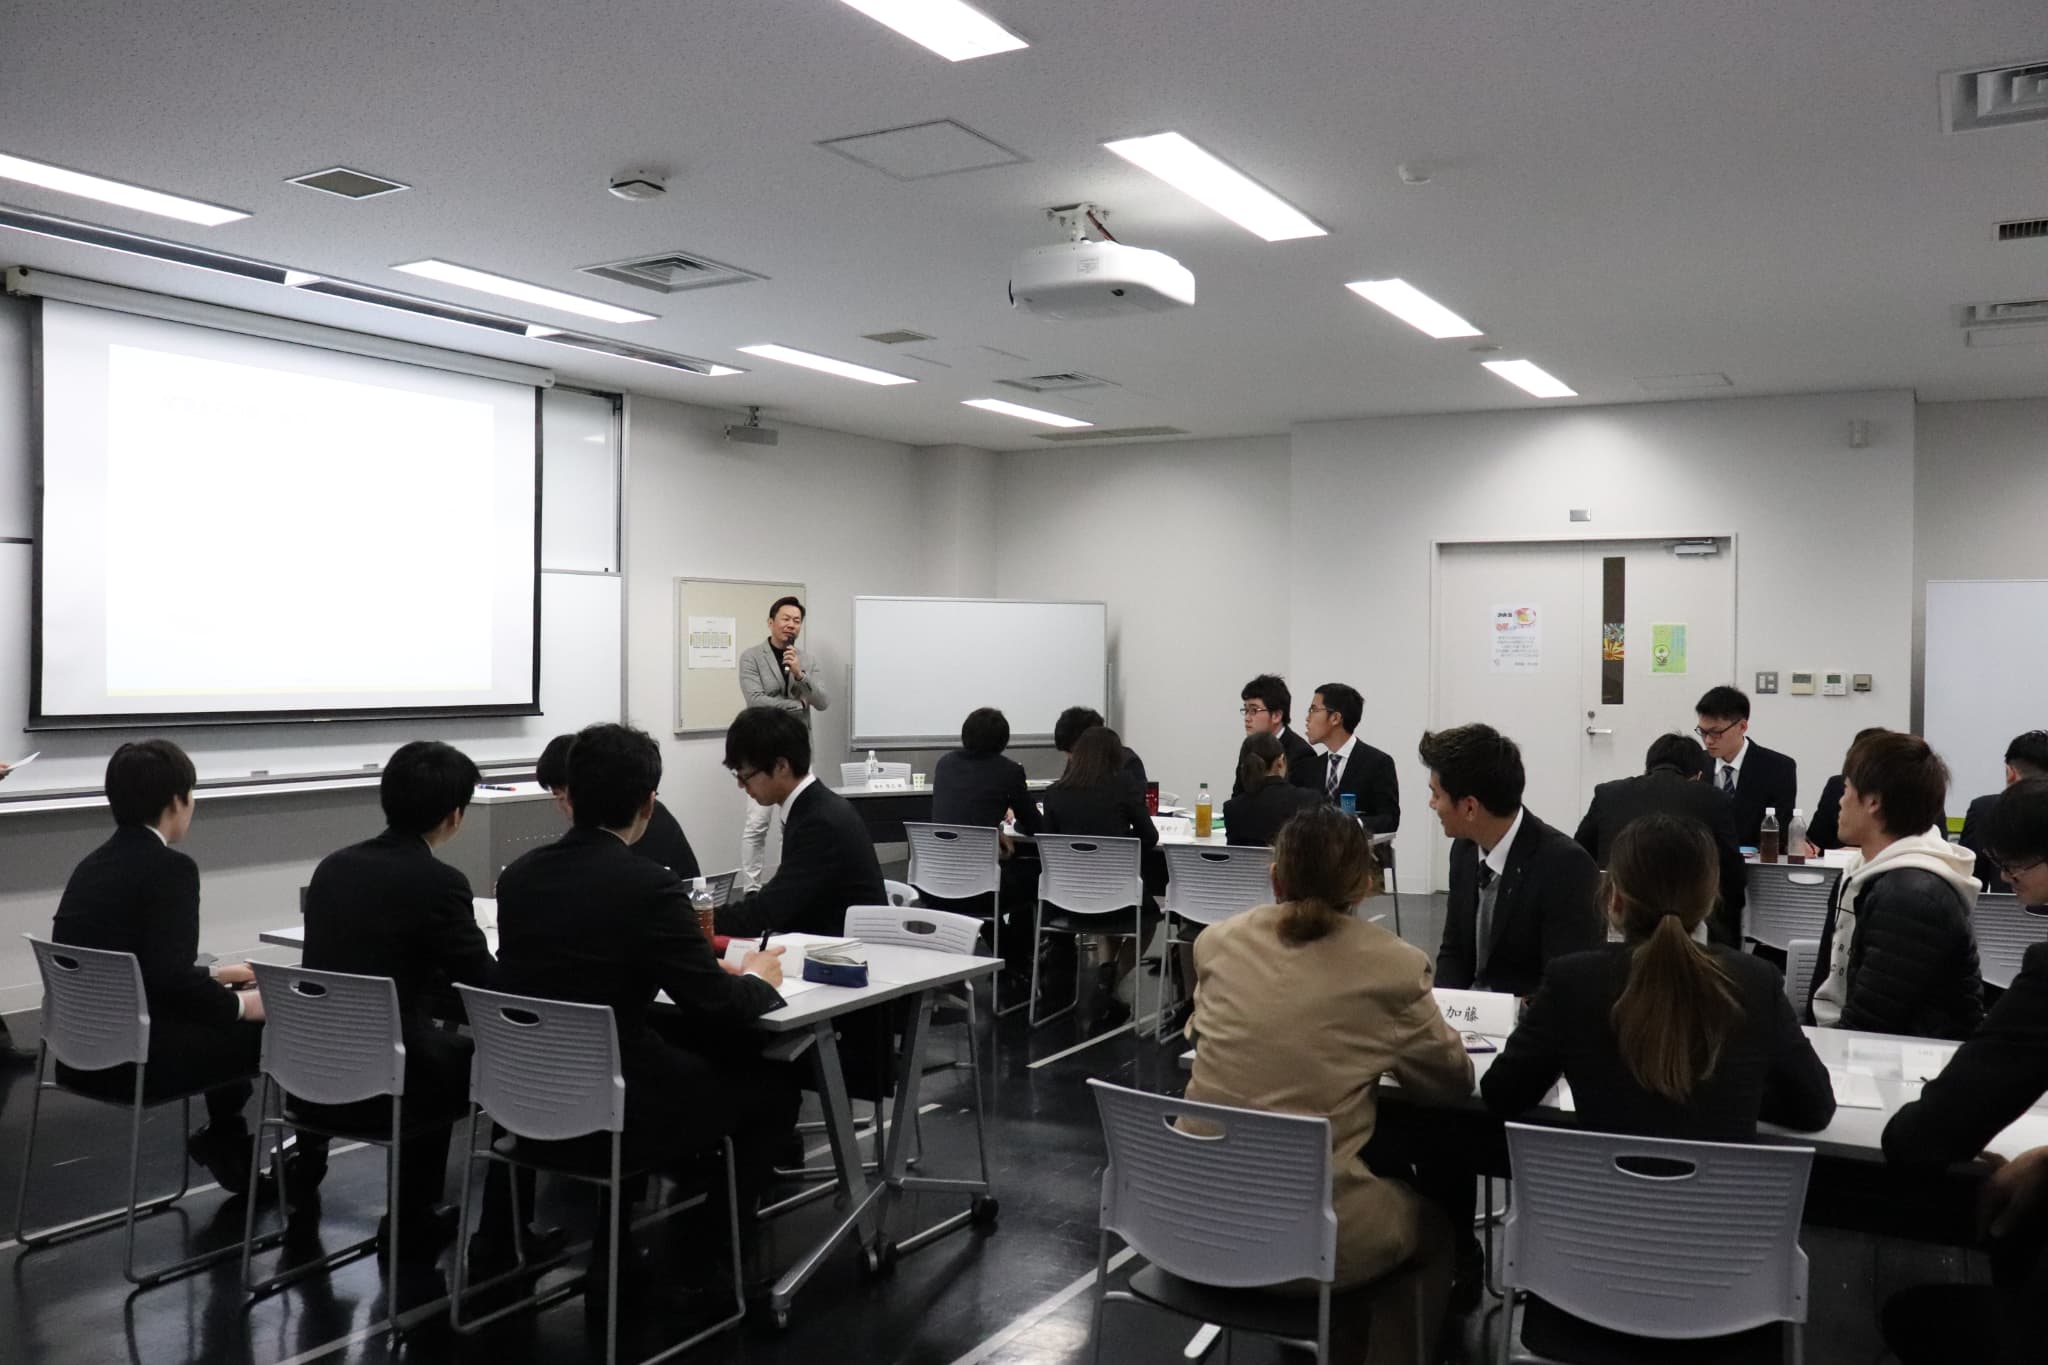 阪南大学にて「事業継承」についての講演を行いました。